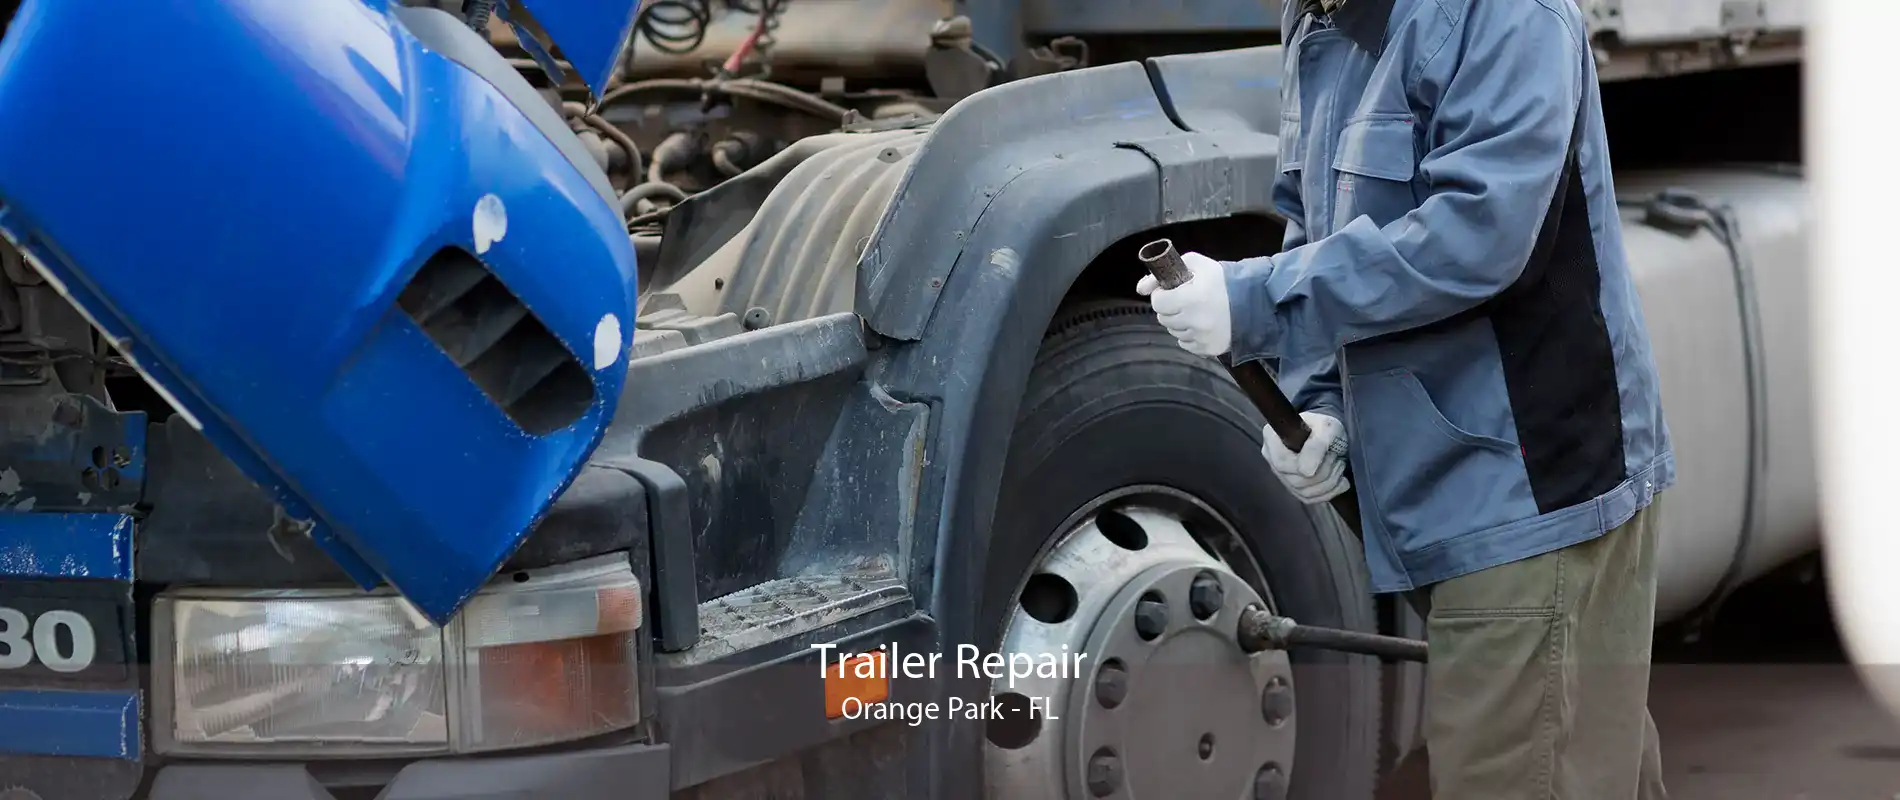 Trailer Repair Orange Park - FL